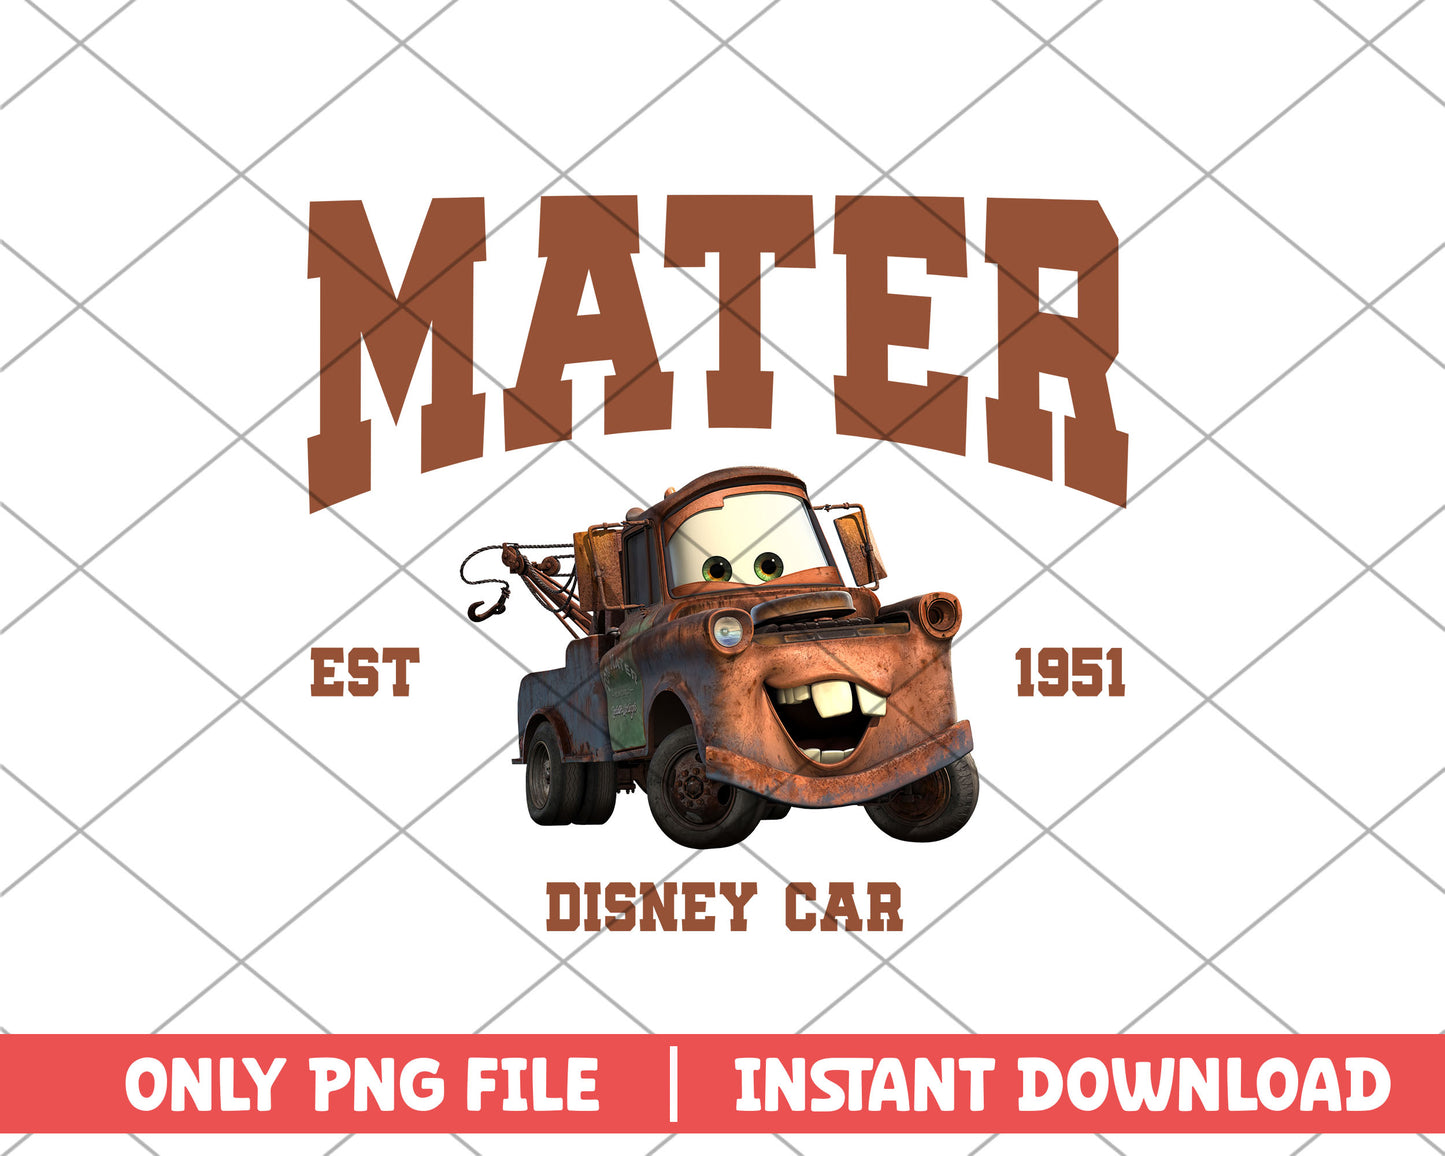 Disney car mater disney png